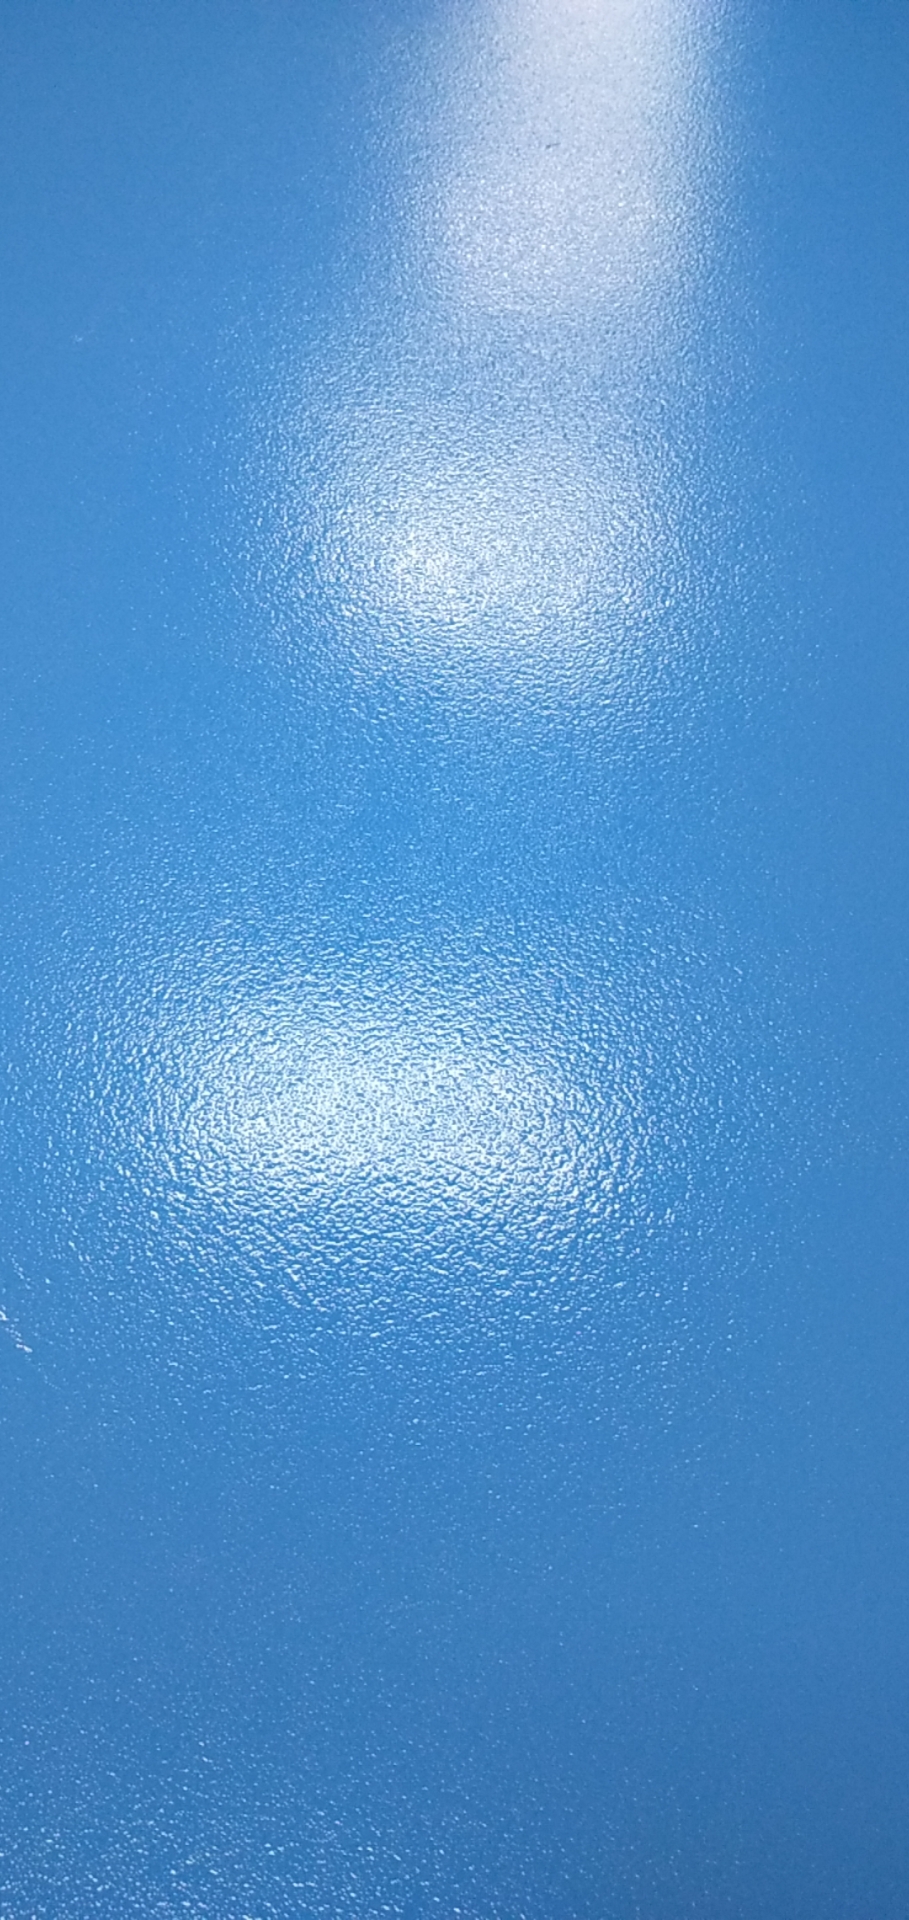 微珠超耐磨地坪-微珠超耐磨面漆-防滑地坪漆-超耐磨地坪